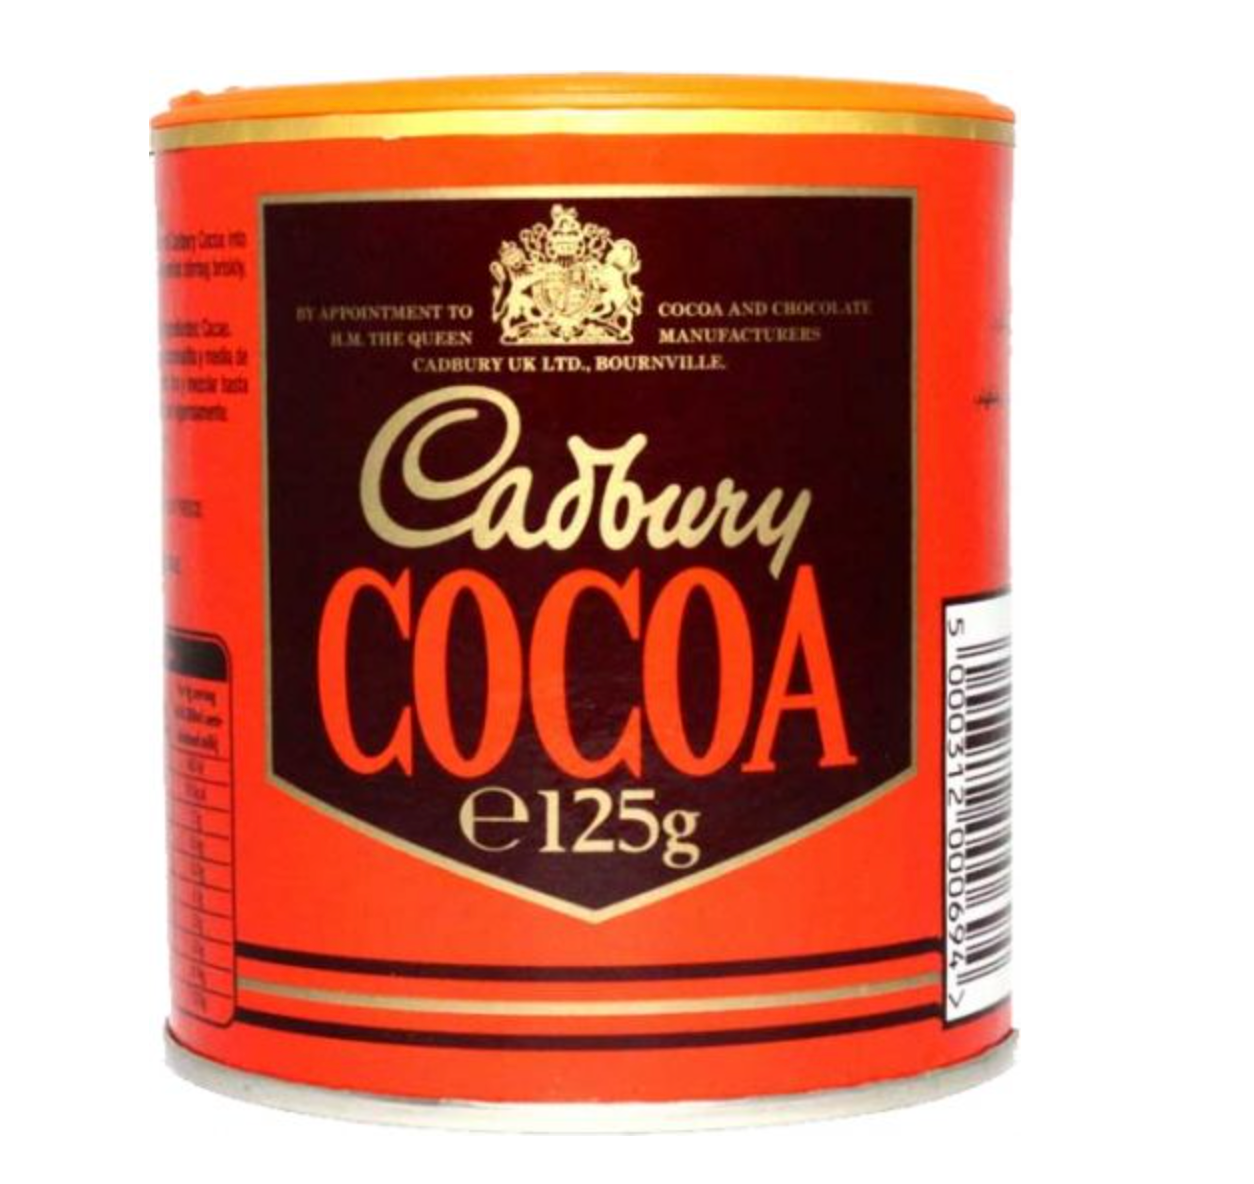 Cadburys Cocoa